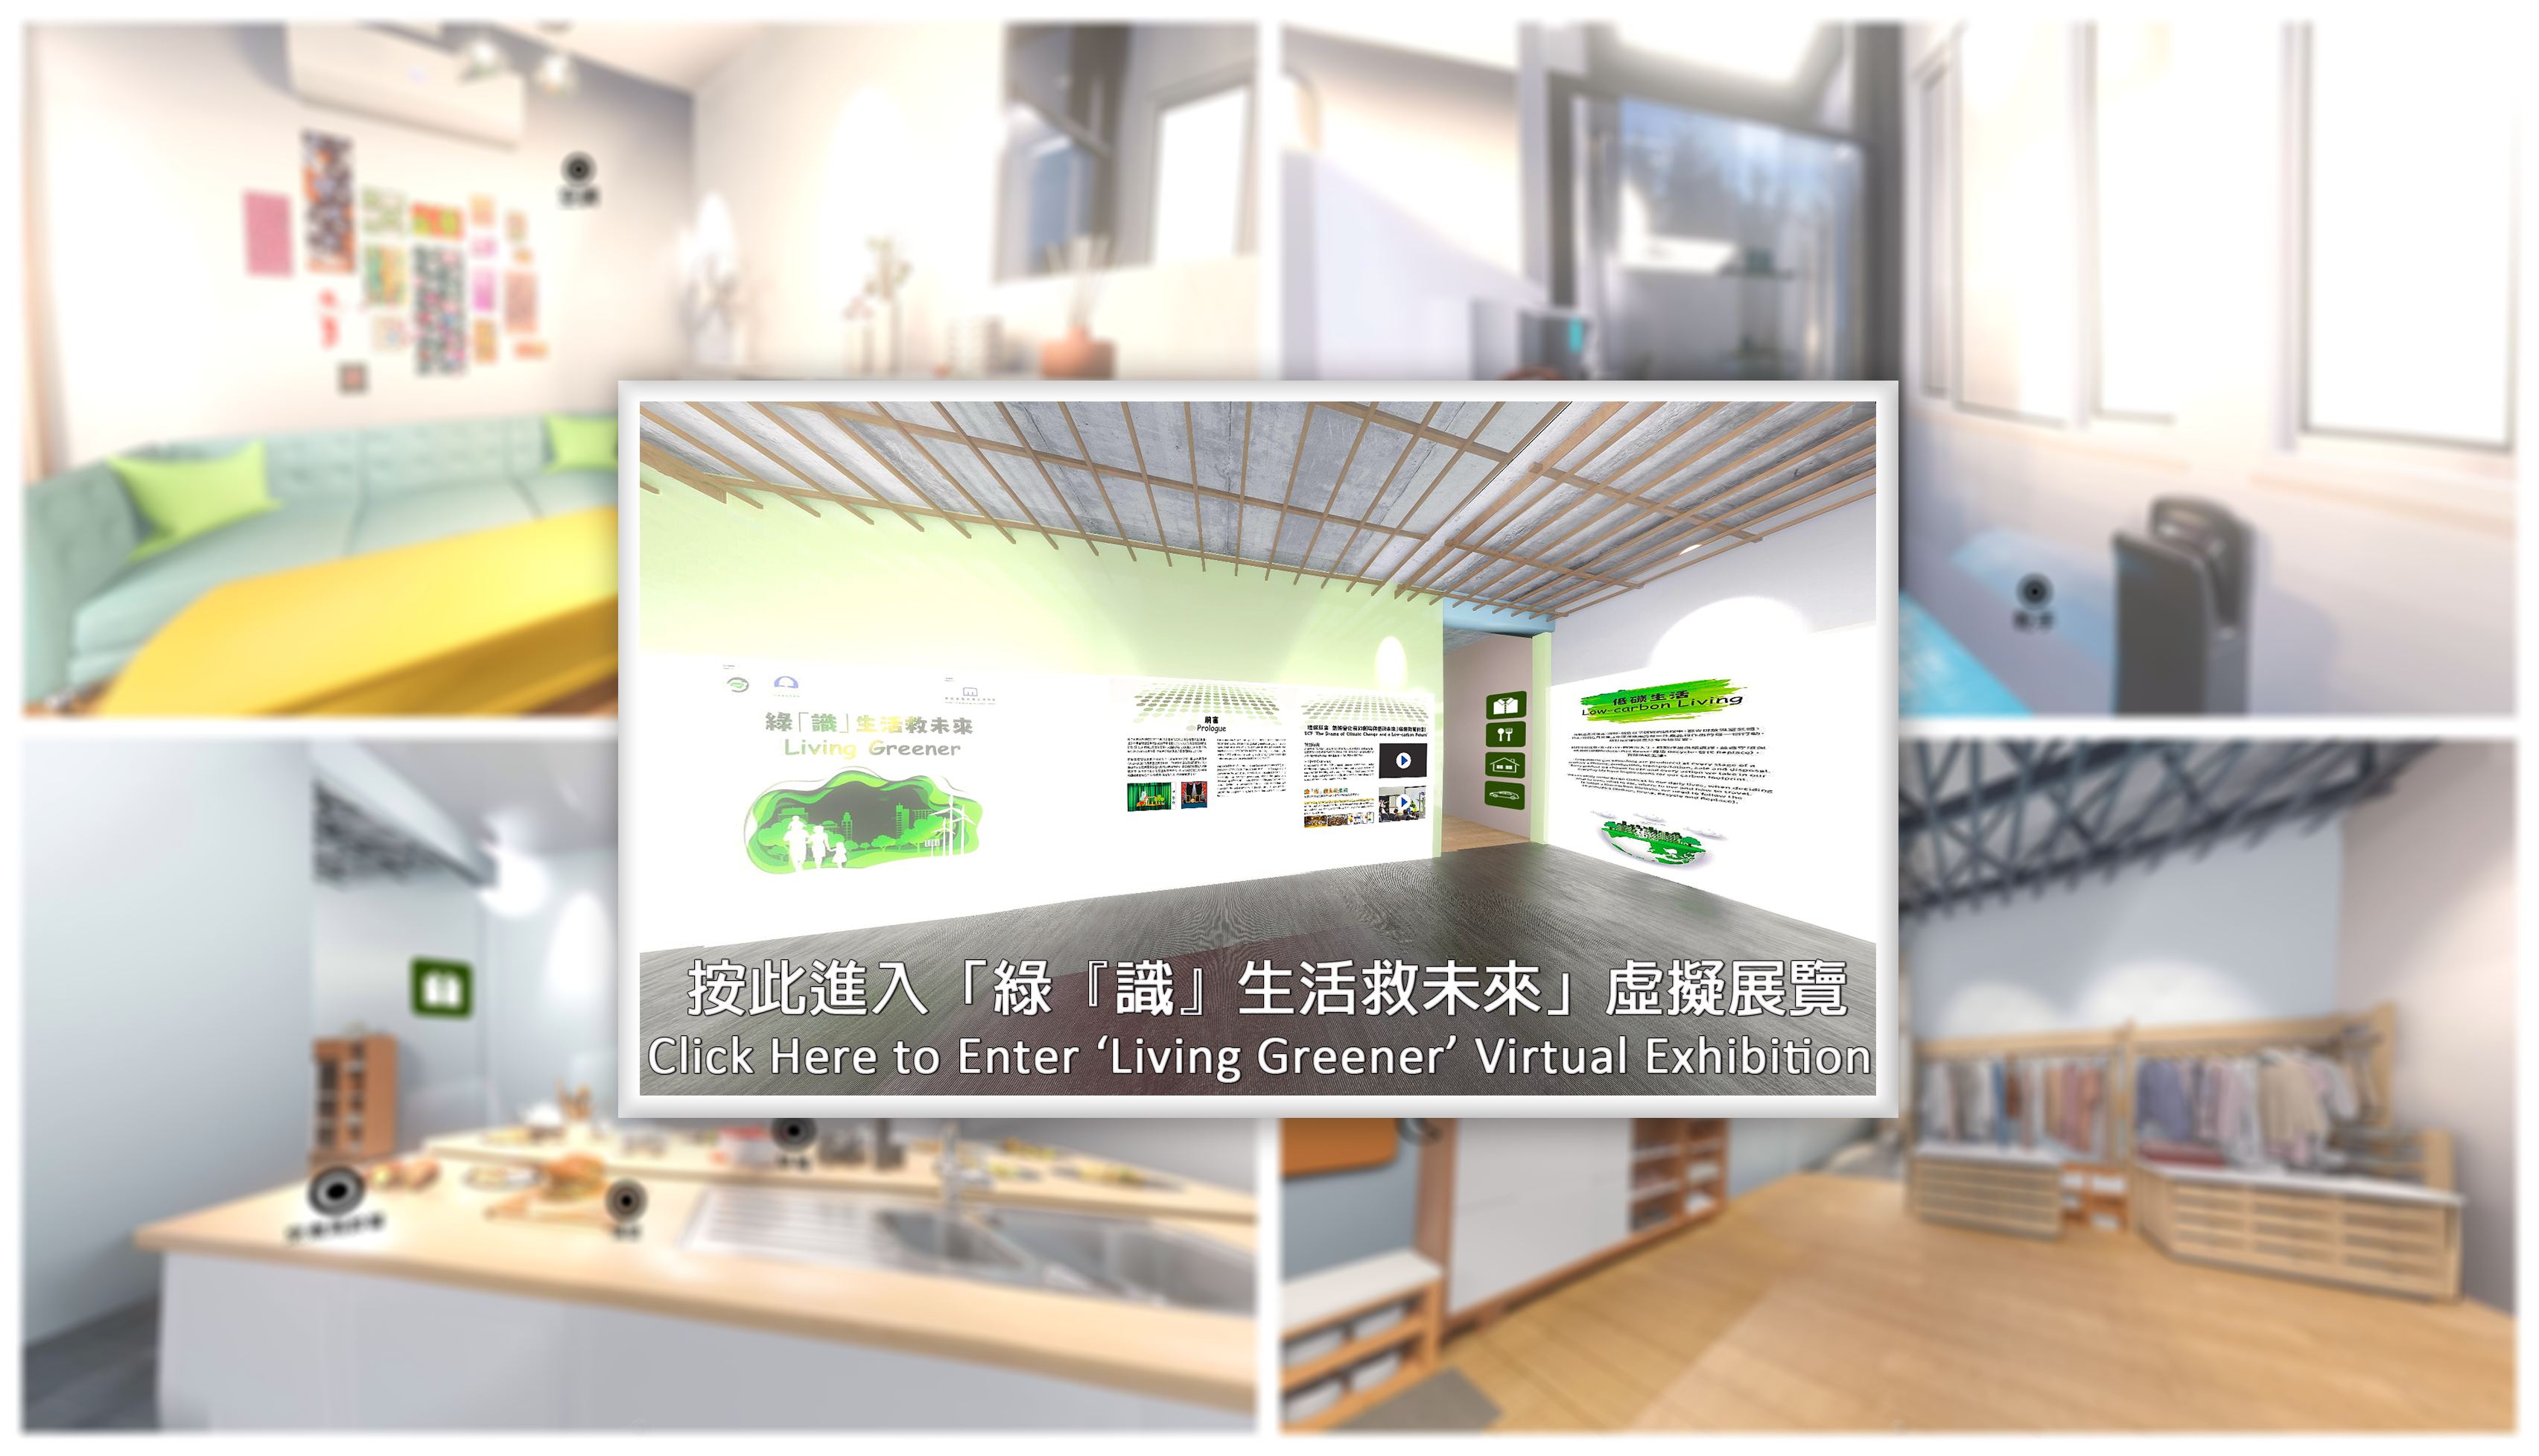 DoCC Living Greener Exhibition Promotion Image For Website v0 HN2